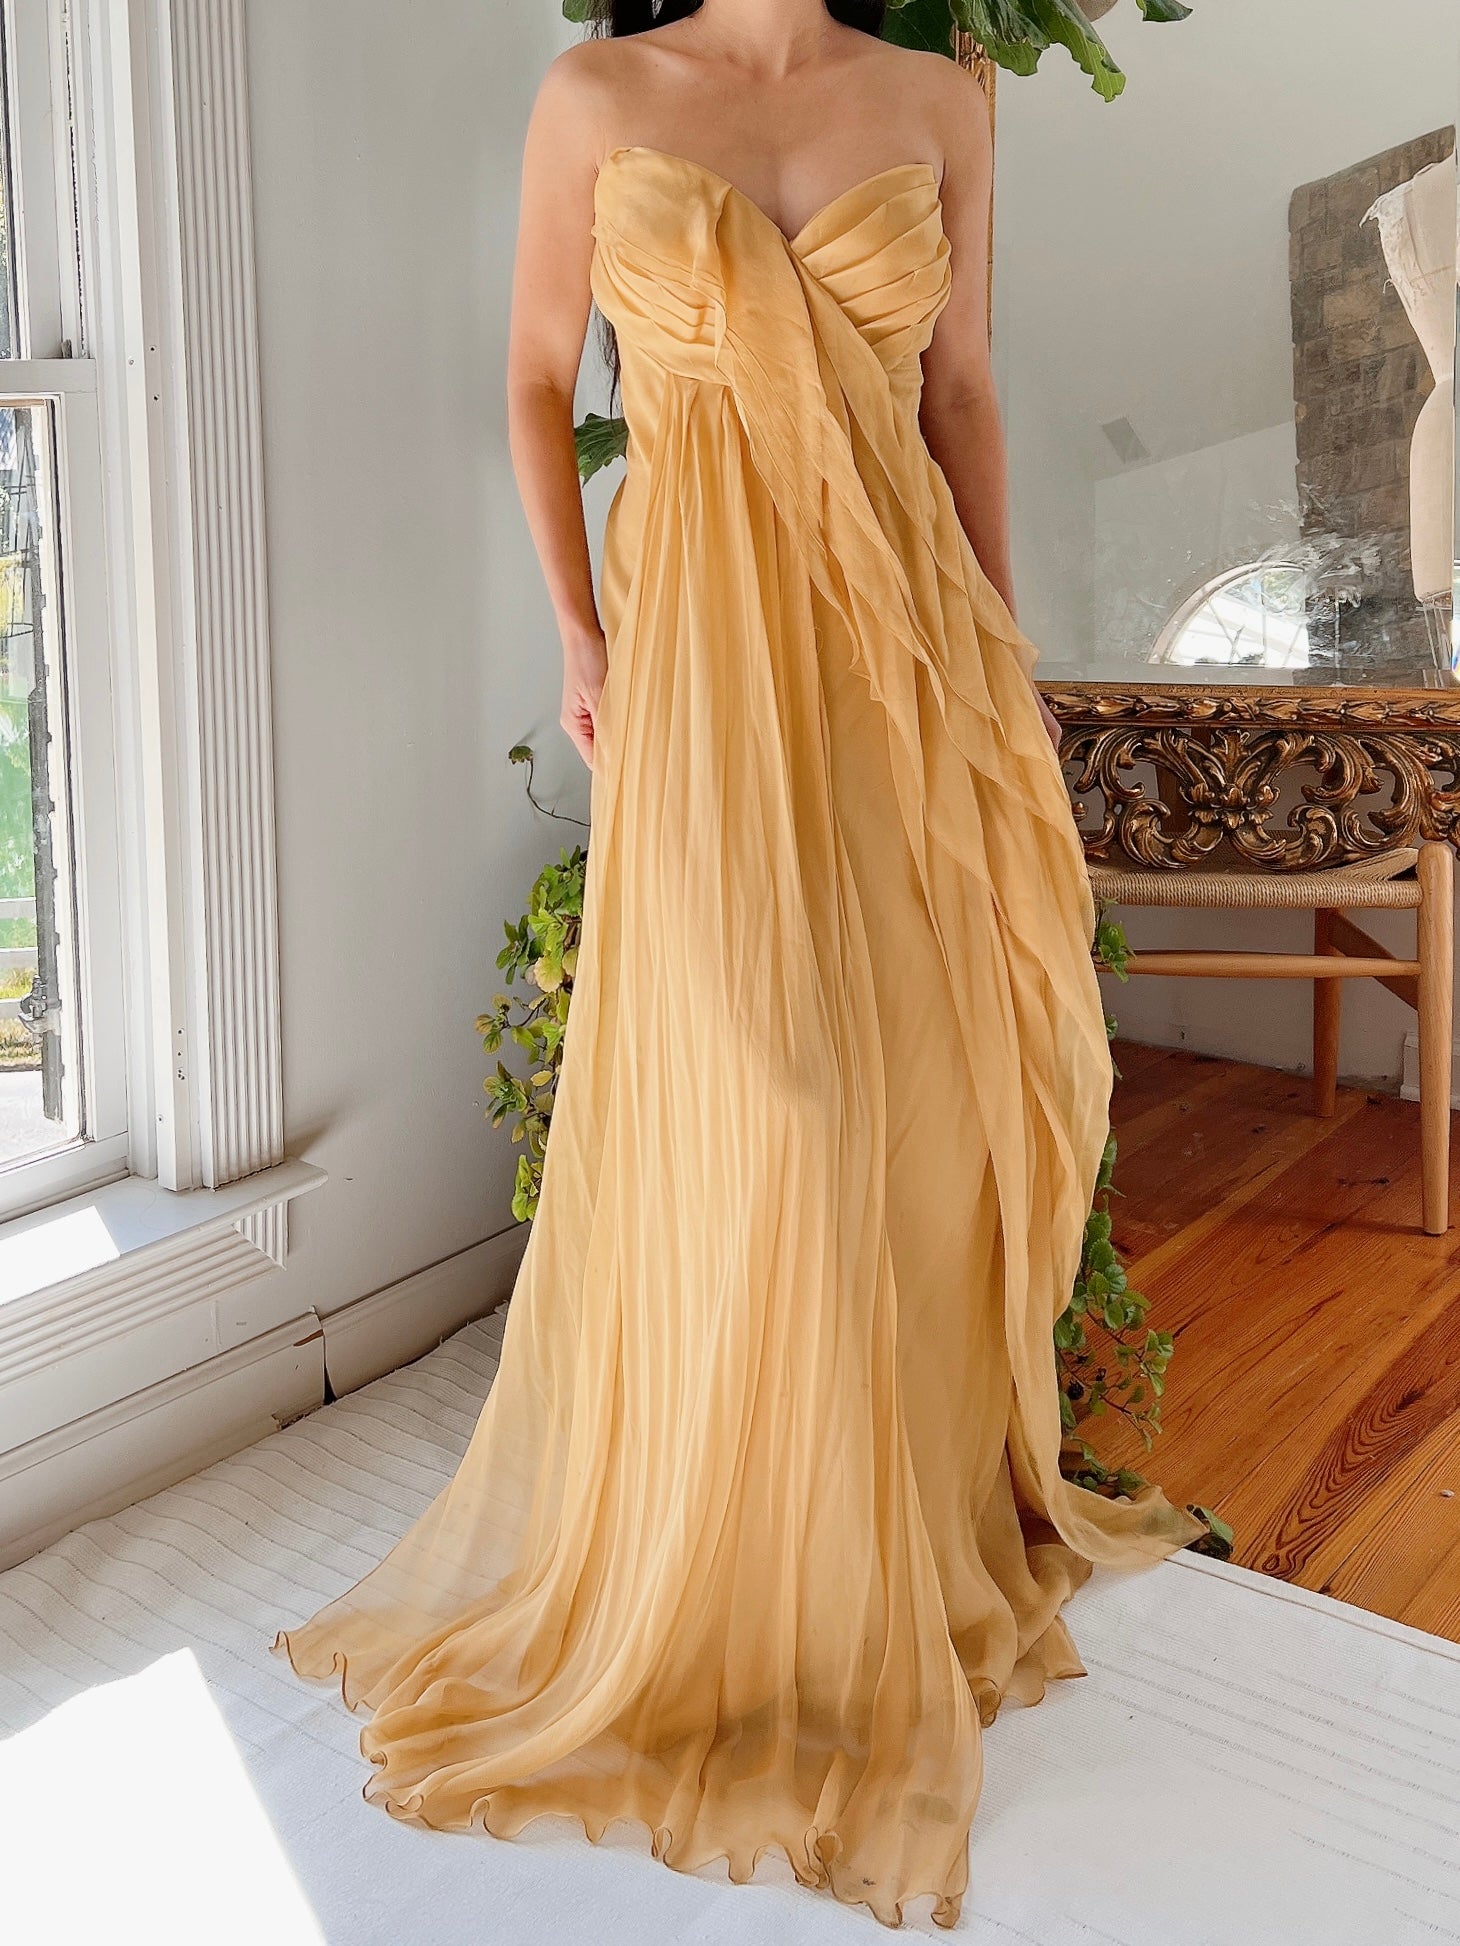 J. Mendel Mustard Silk Dress - M/L